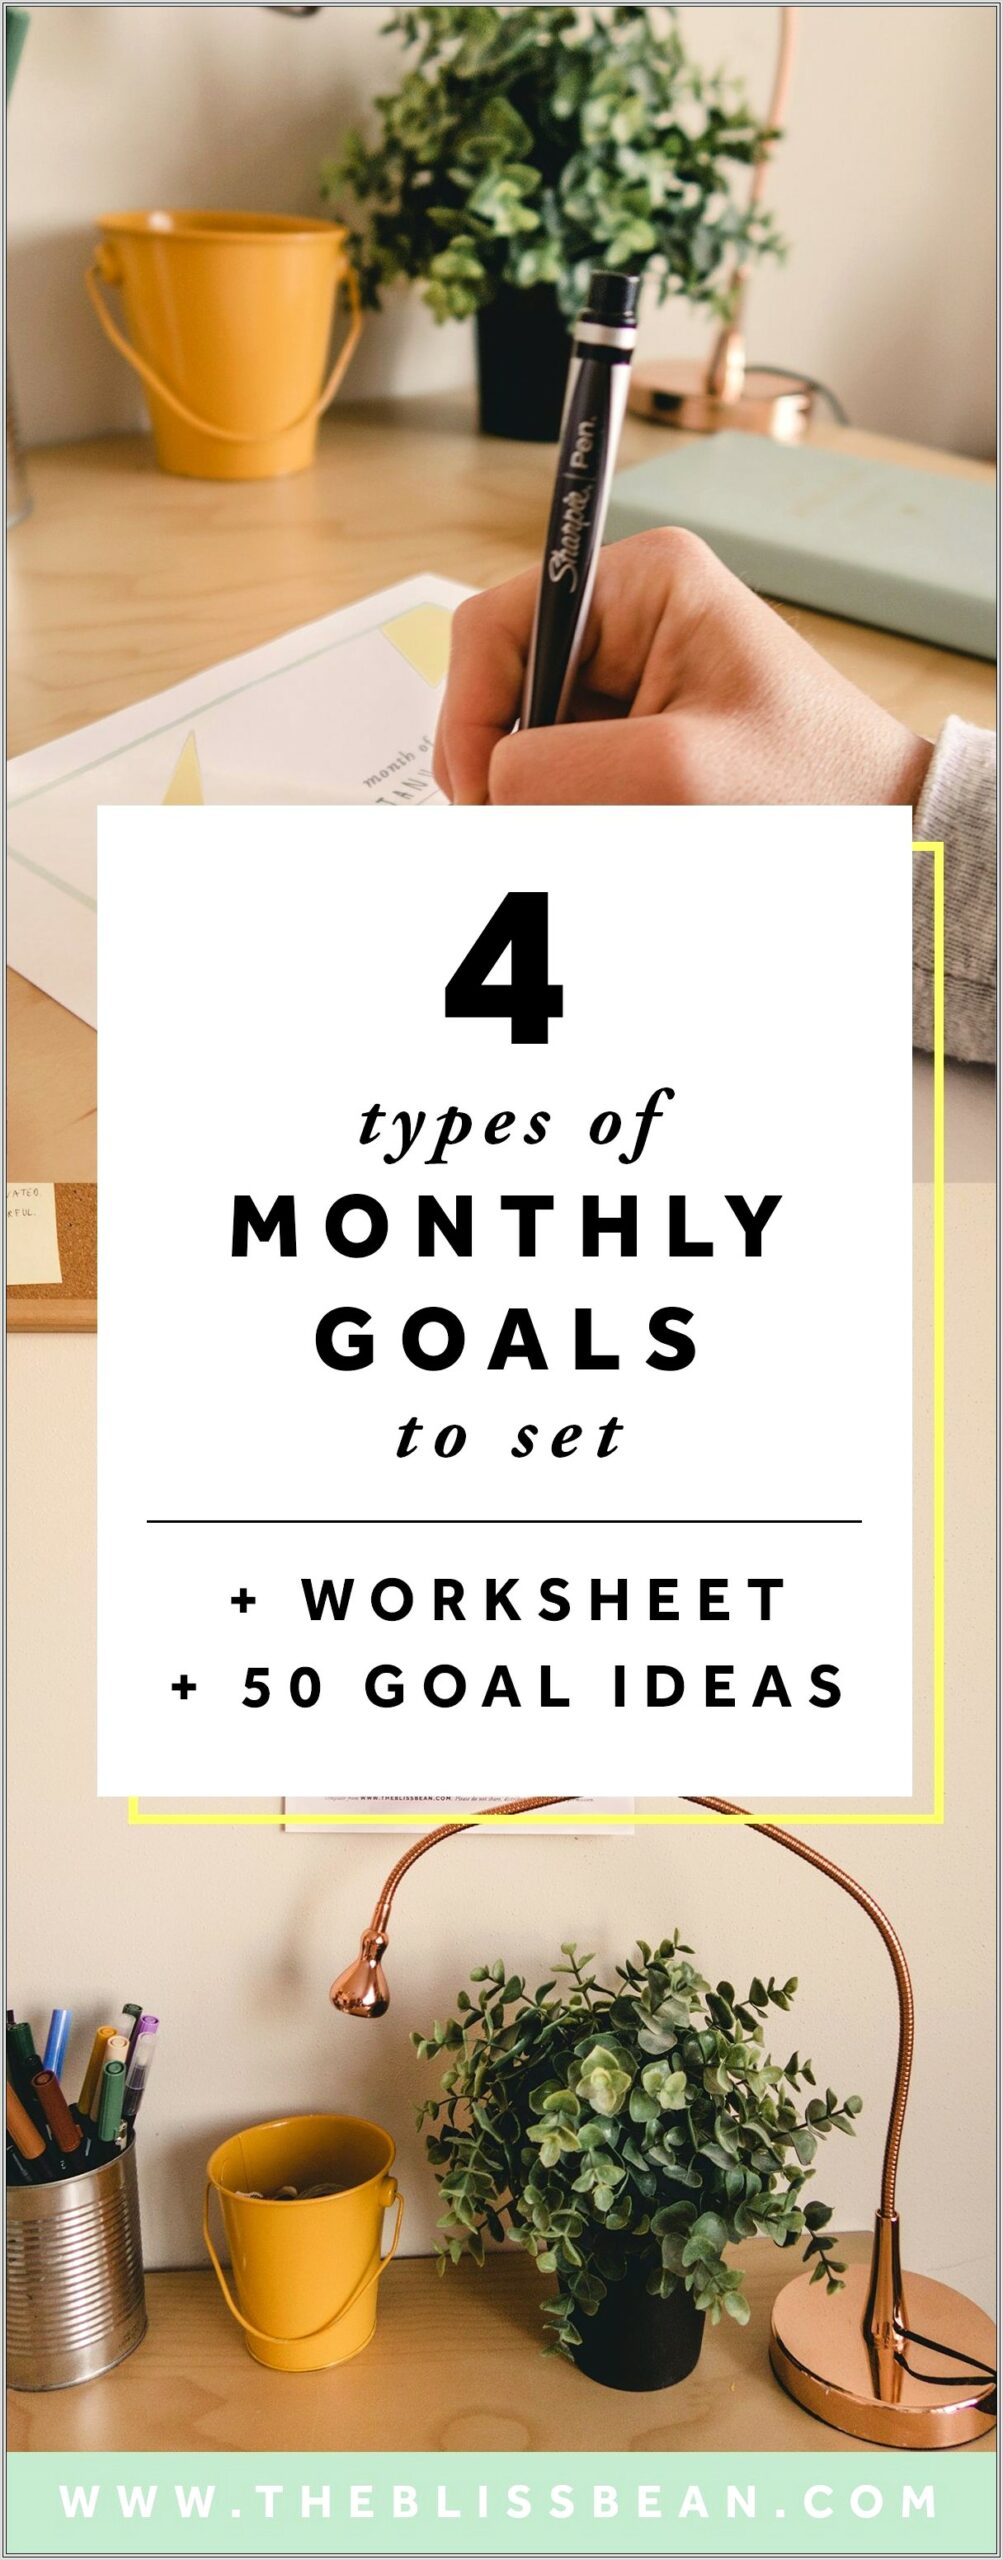 Monthly Goal Setting Worksheet